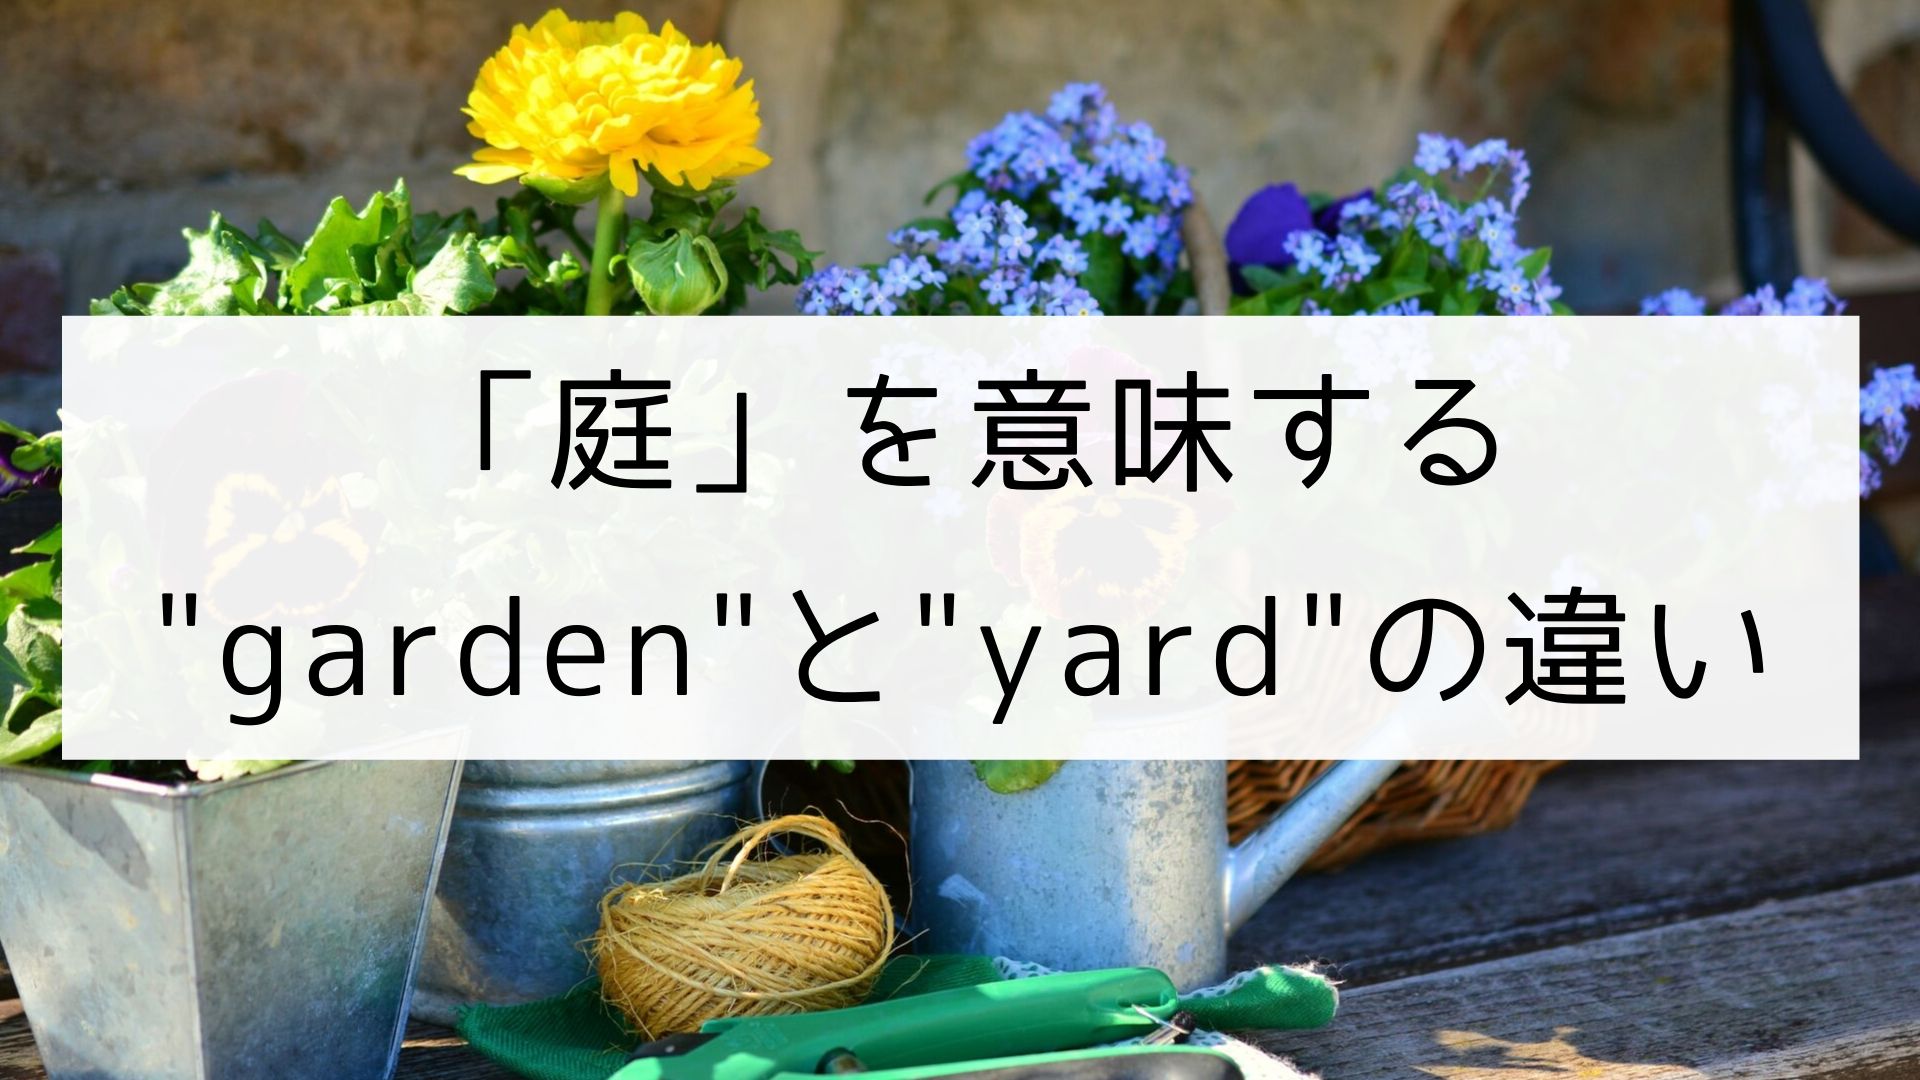 英単語 庭 を意味する Garden と Yard の違い 日本語教師の英語講座